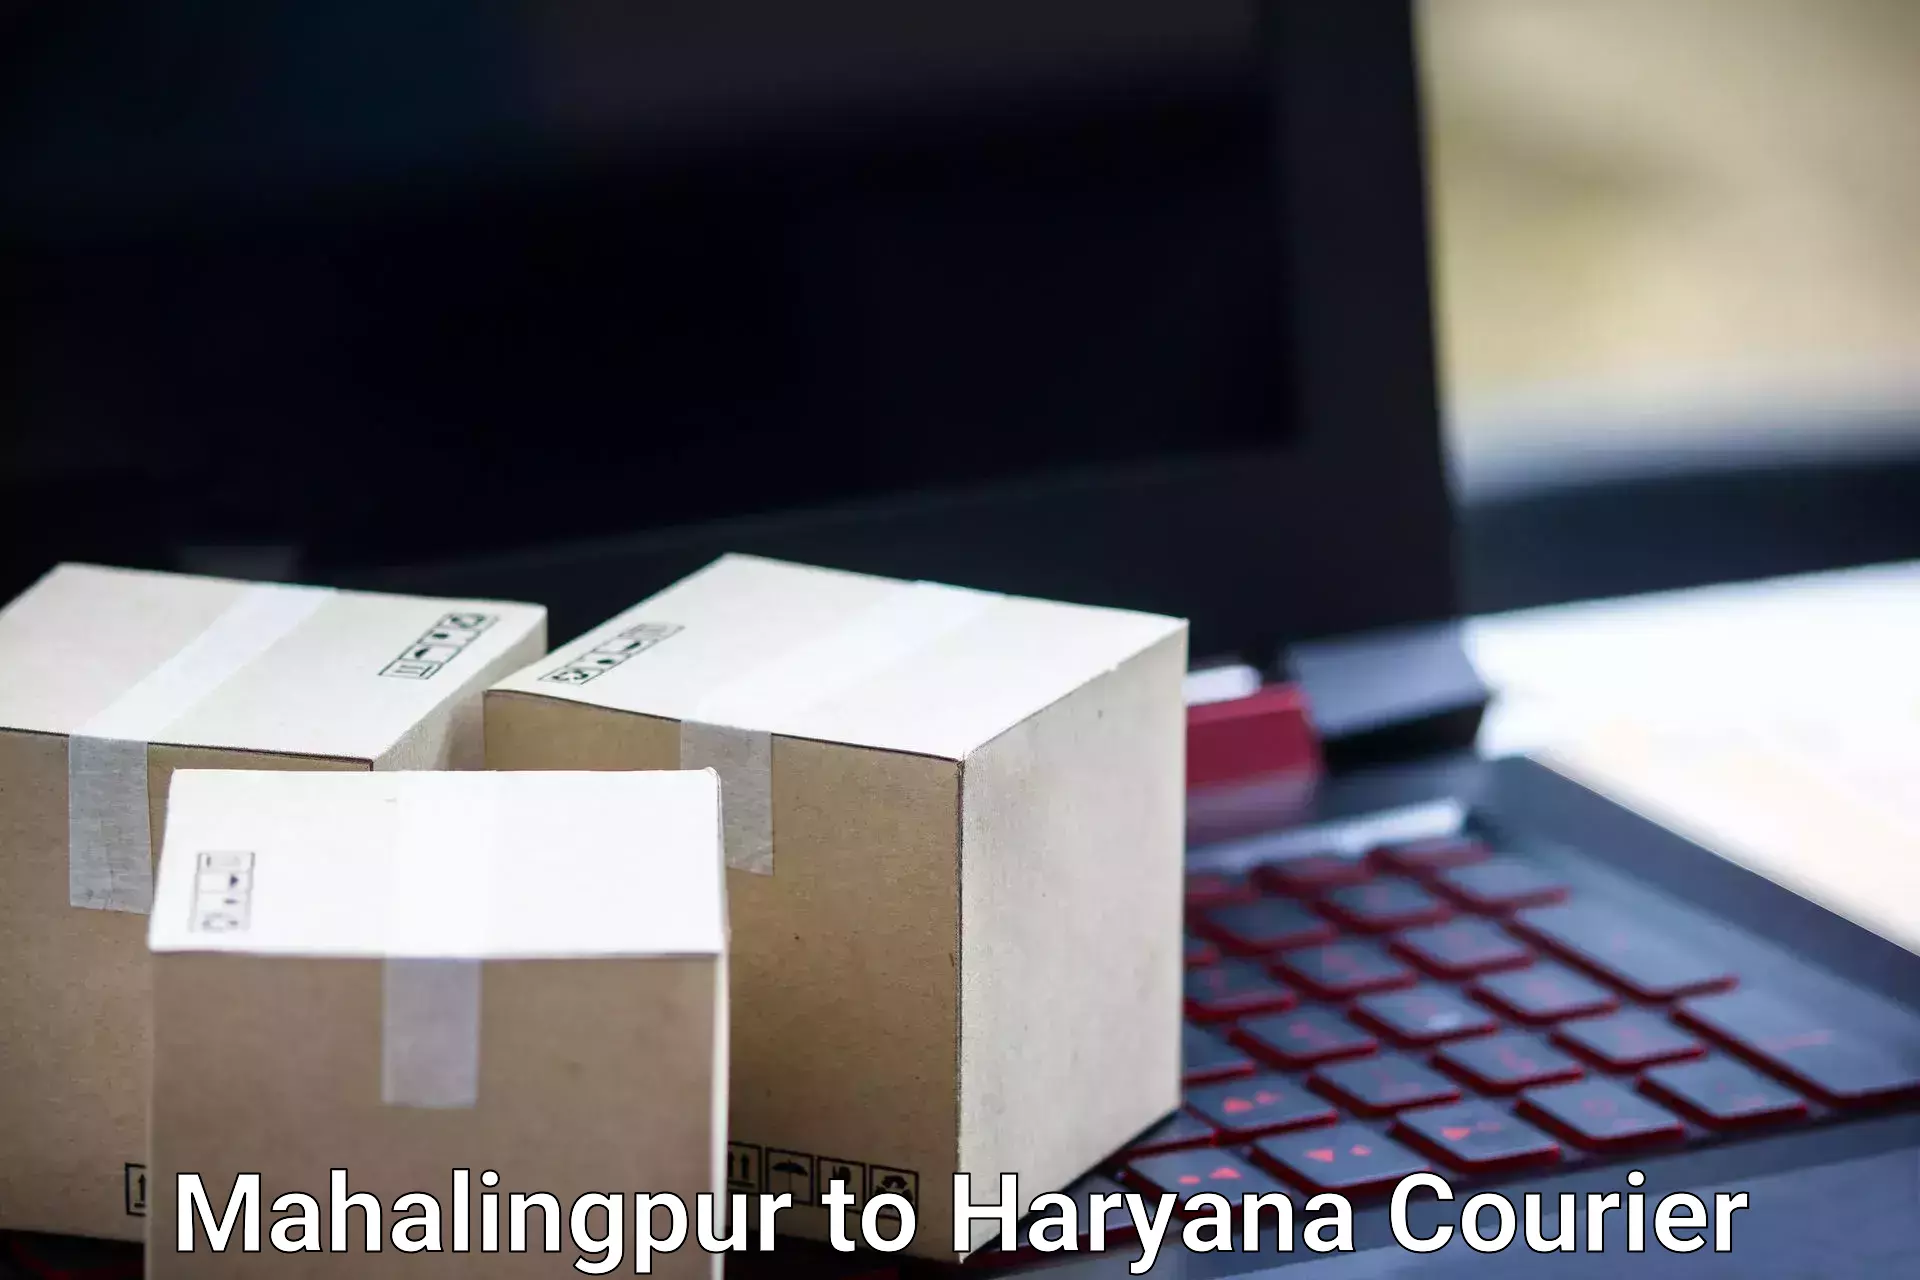 Baggage transport network Mahalingpur to Bilaspur Haryana